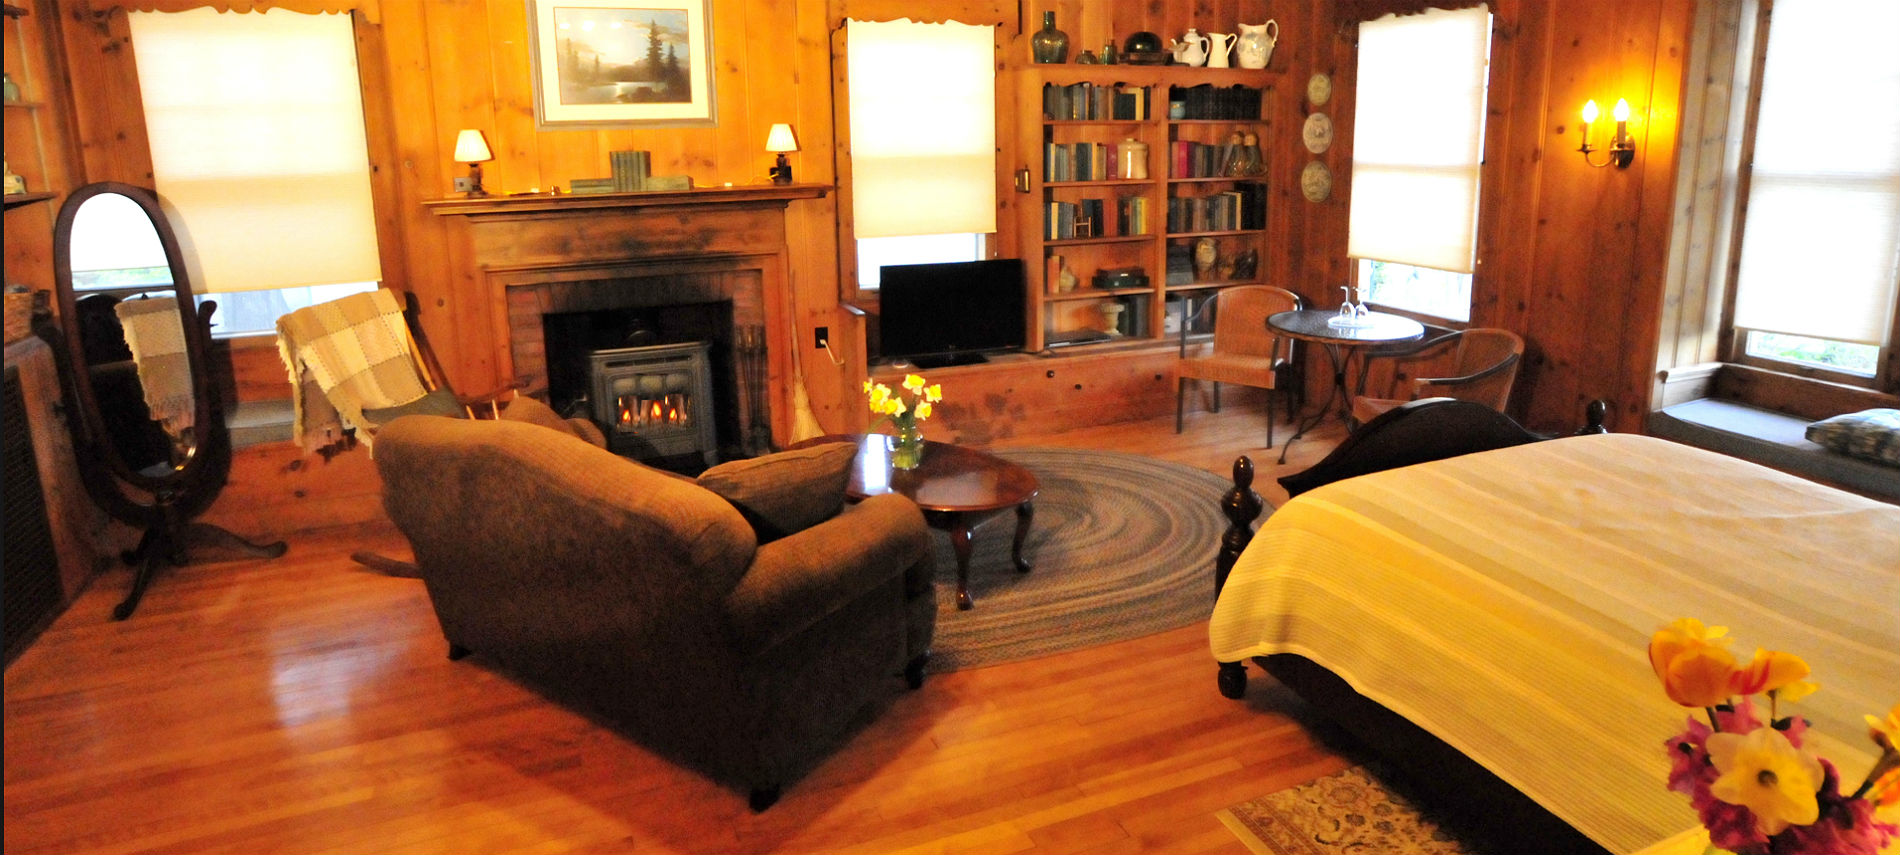 Honeymoon Suite at Romantic Bed & Breakfast near Bangor in Dexter Maine